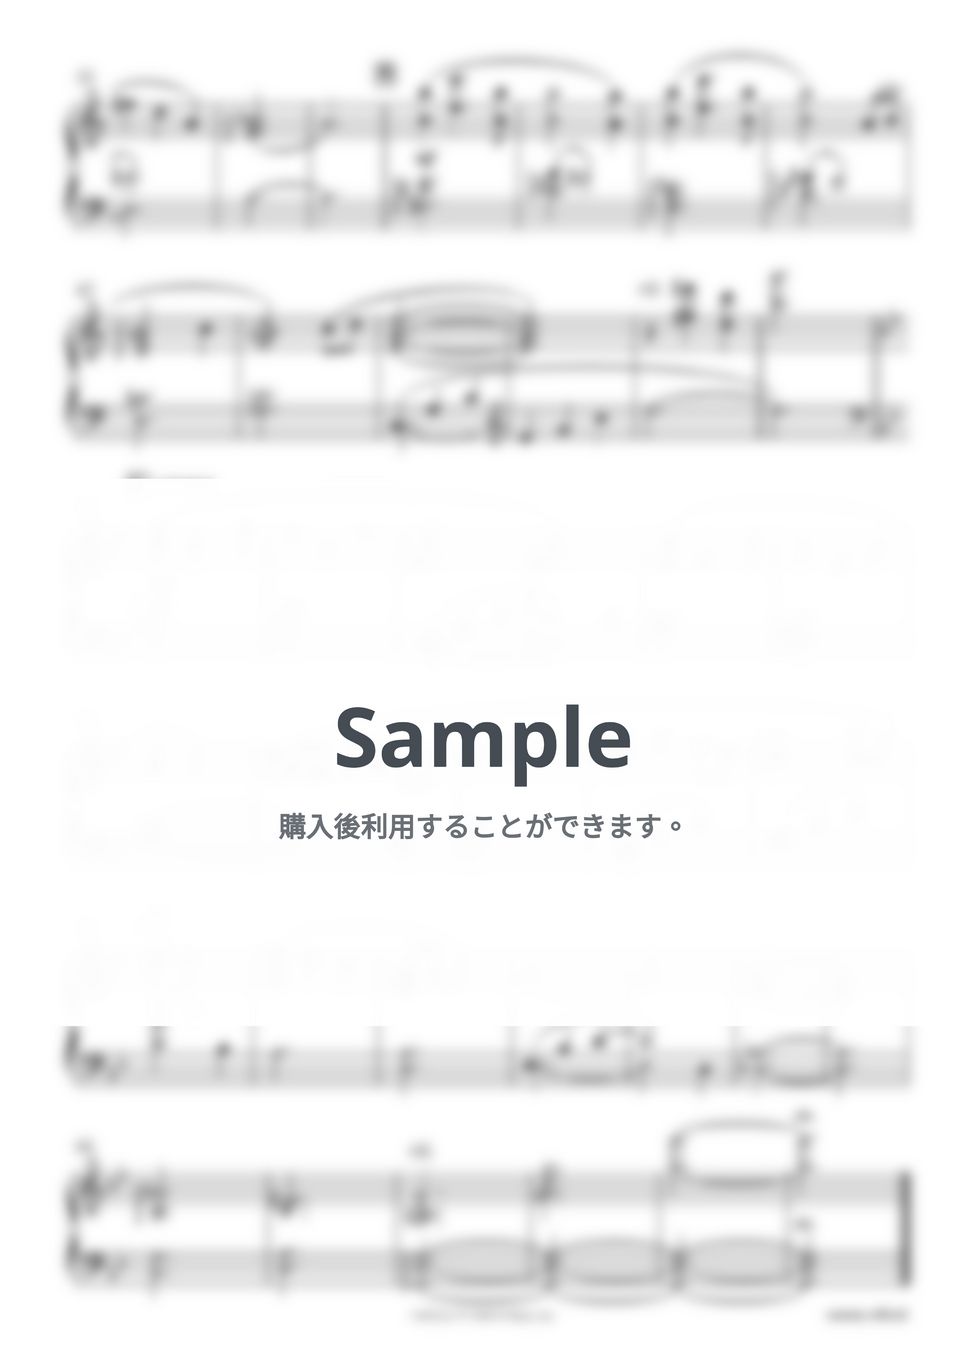 ドラマ『シジュウカラ』OST - メインテーマ（ピアノ・バージョン）【監修：侘美秀俊】 by sammy